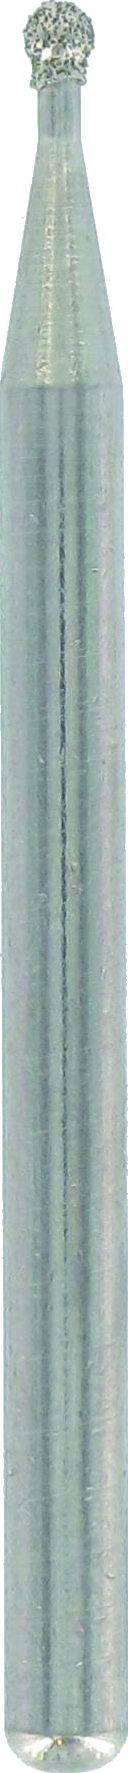 BOSCH Diamantfräser 7103 Kugelform für DREMEL 1,9 mm